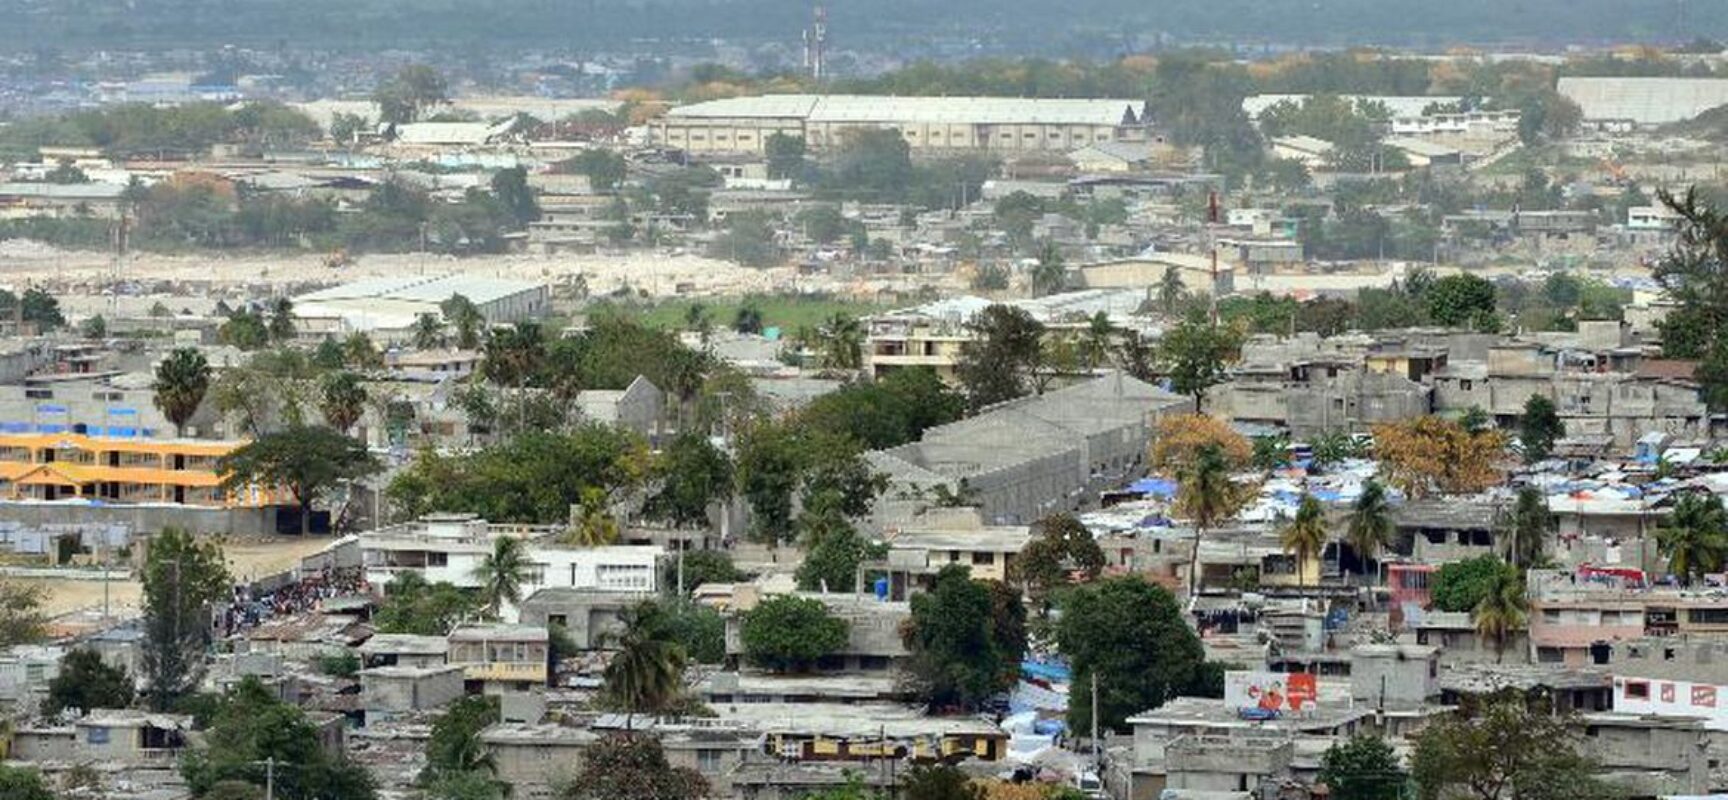 Ex-militares são suspeitos de assassinato do presidente do Haiti